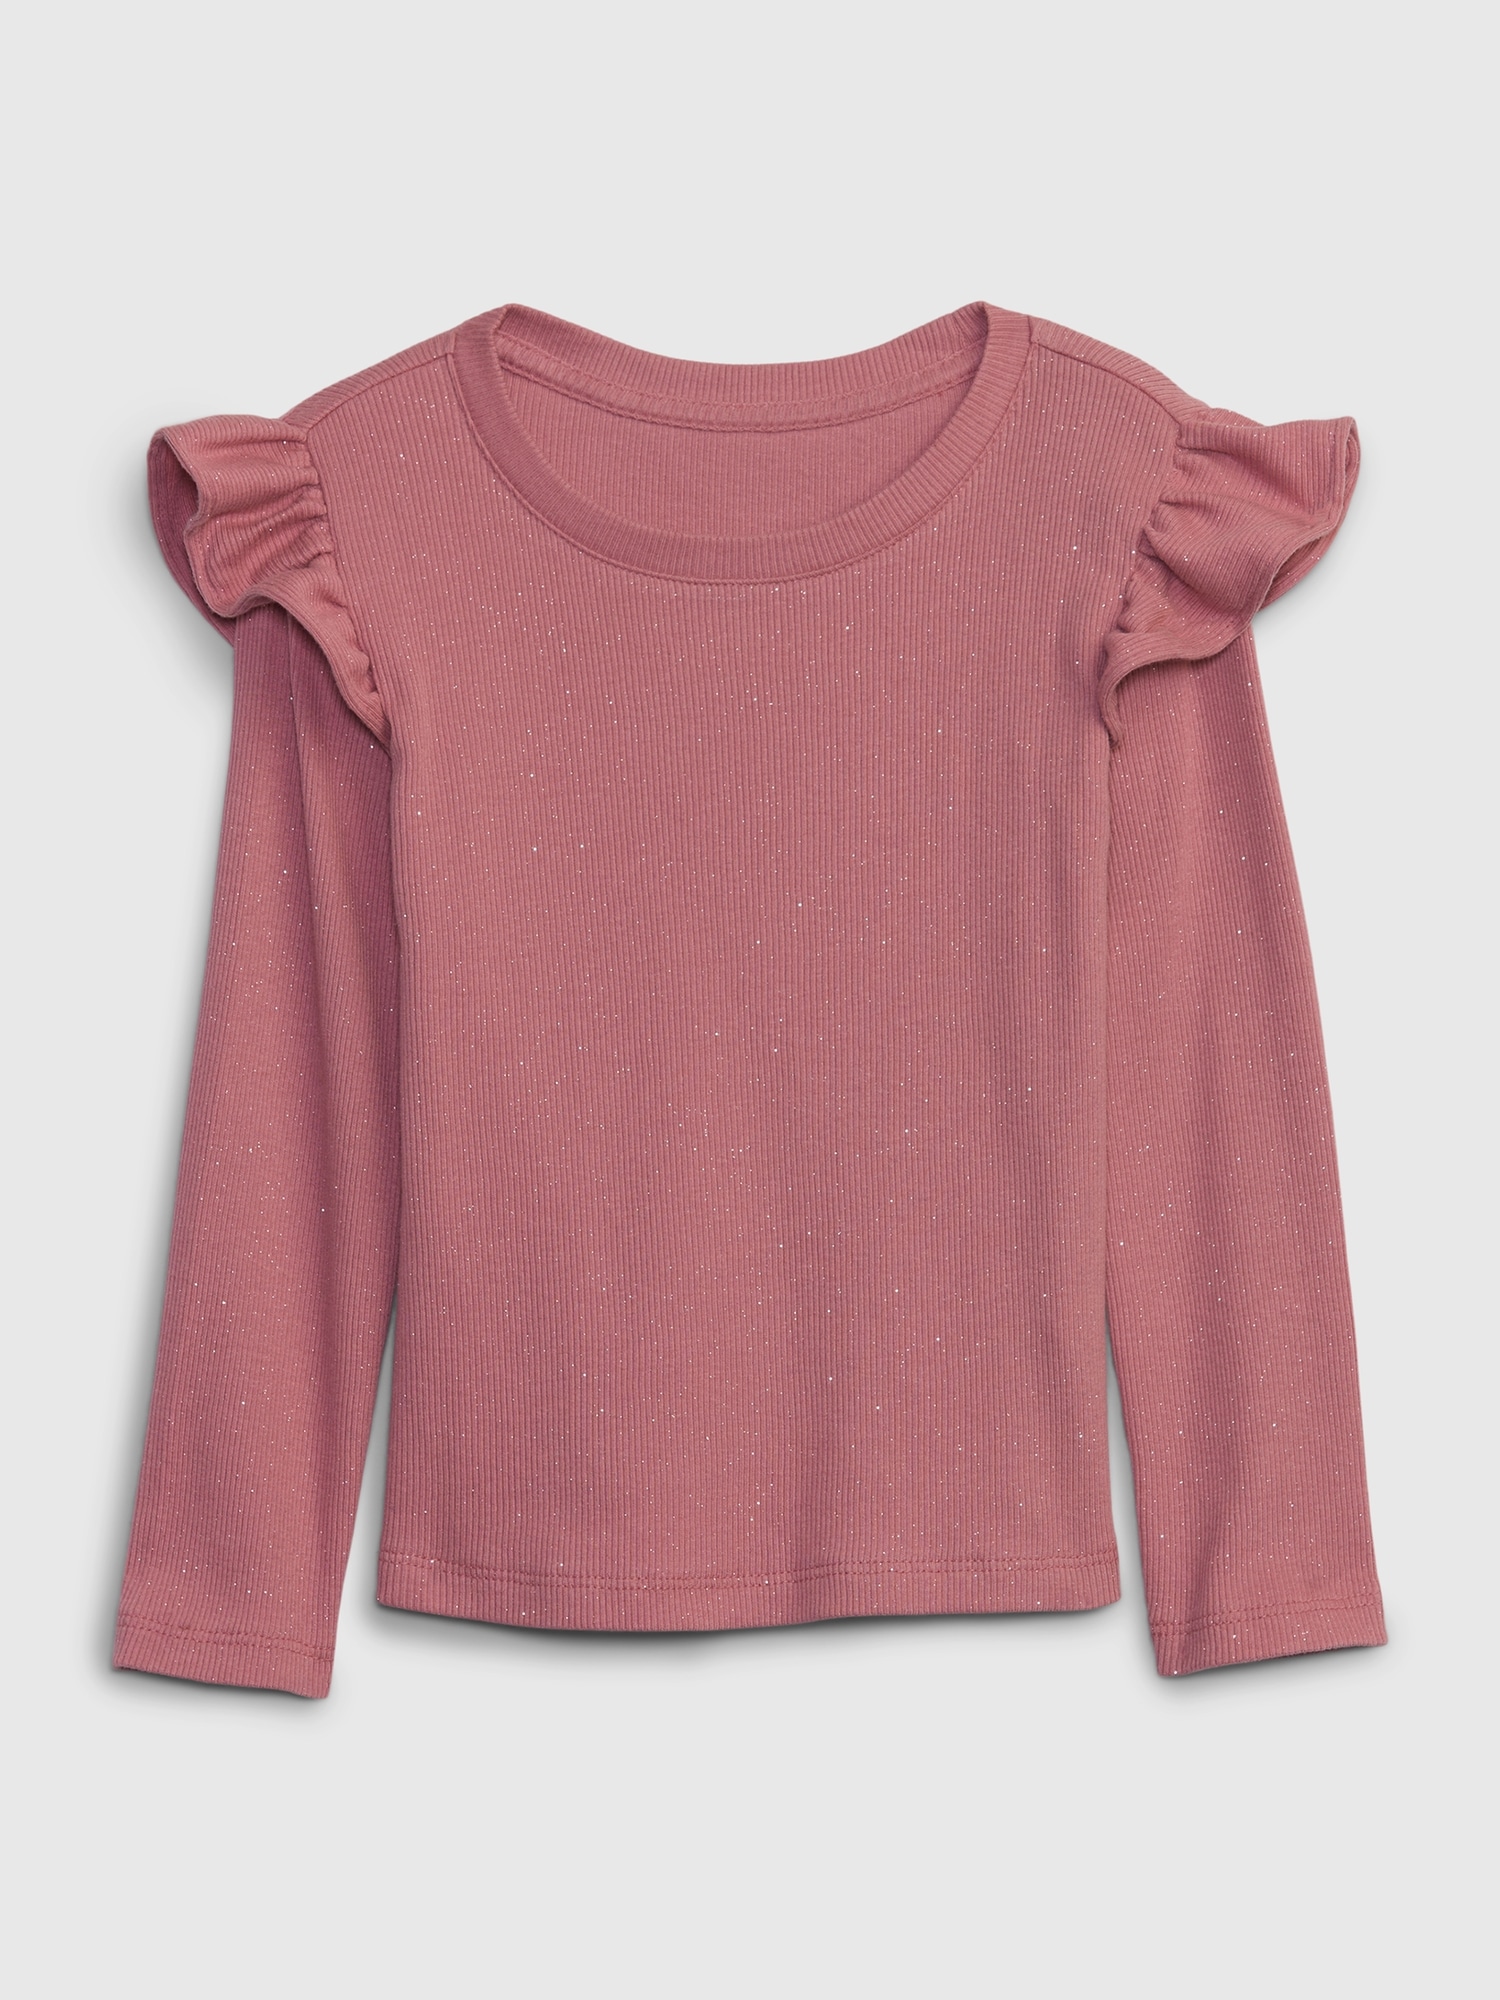 Toddler Ruffle Rib T-Shirt | Gap